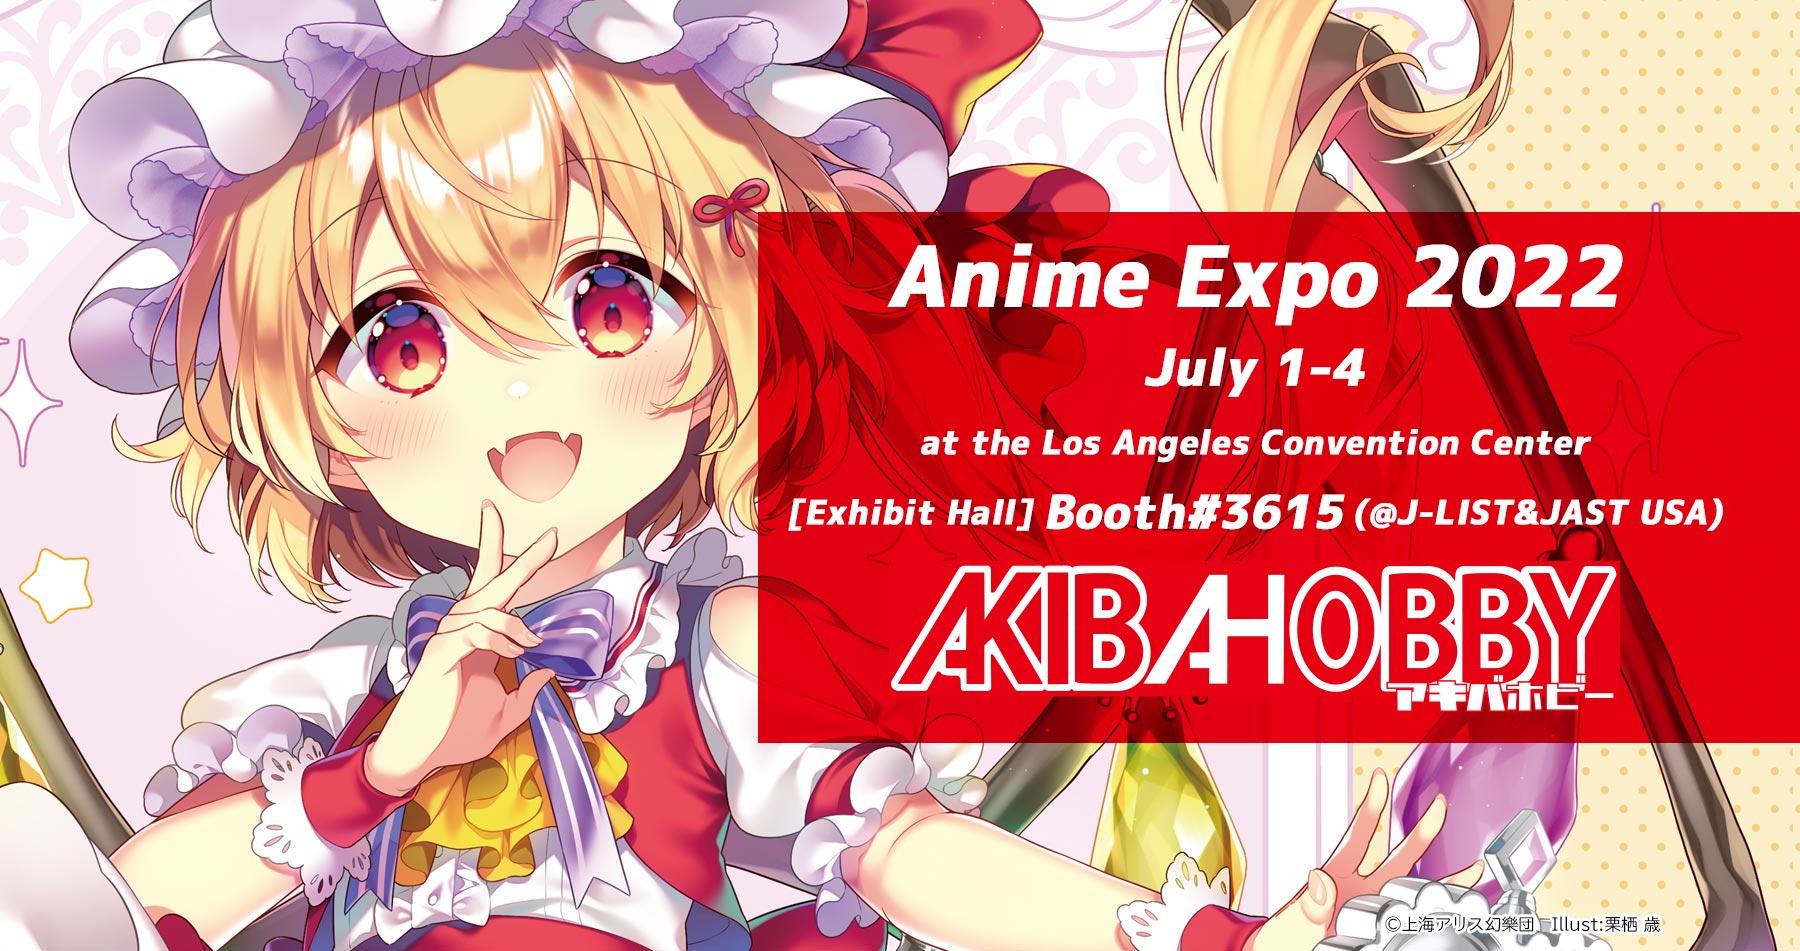 アキバホビーが北米最大のアニメイベント Anime Expo 22 に出展 東方projectグッズなどを販売 株式会社イザナギ アキバホビー のプレスリリース